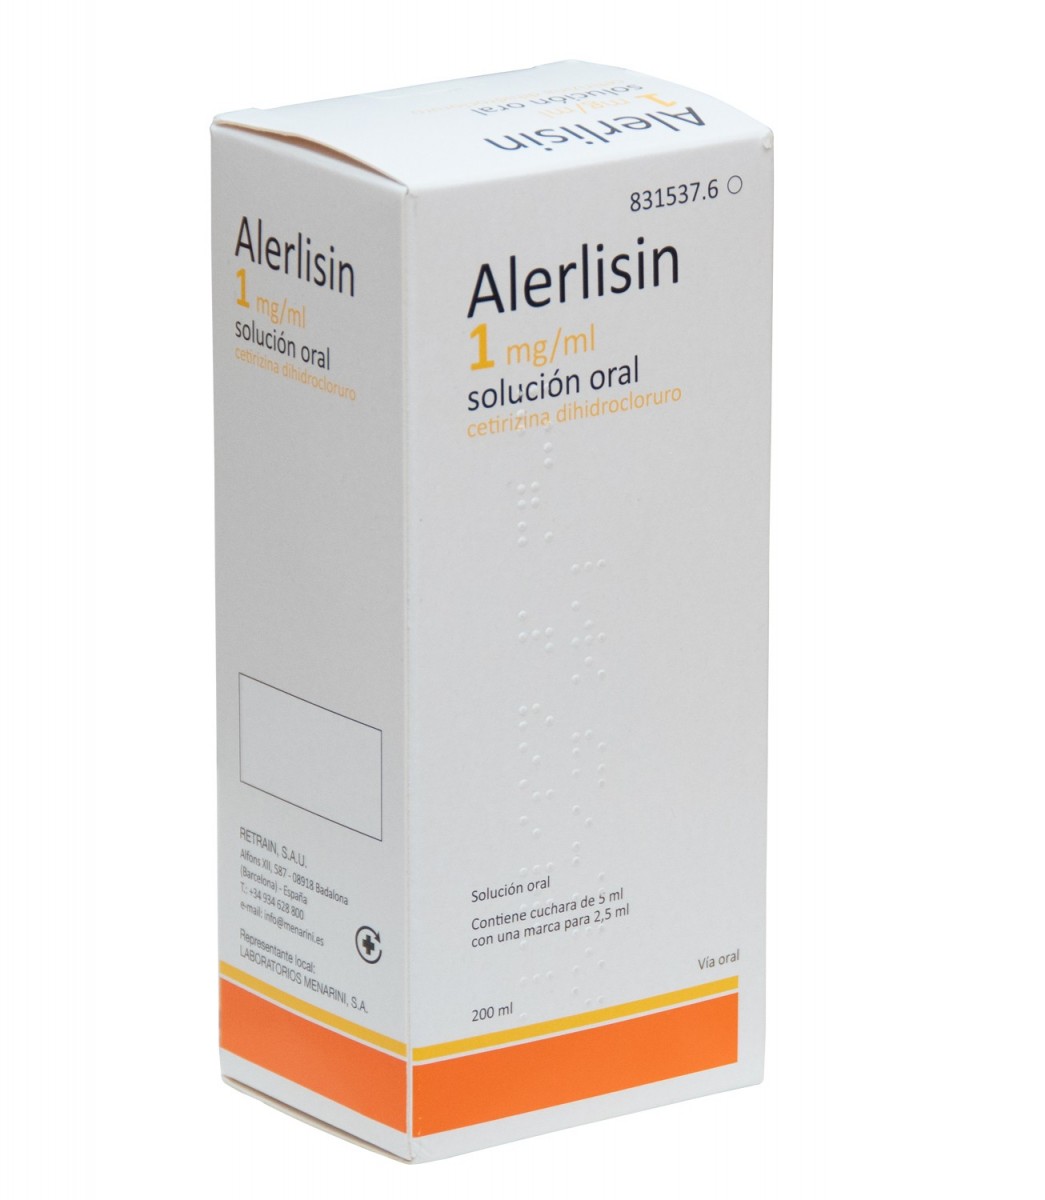 ALERLISIN 1 mg/ml SOLUCION ORAL, 1 frasco de 200 ml fotografía del envase.